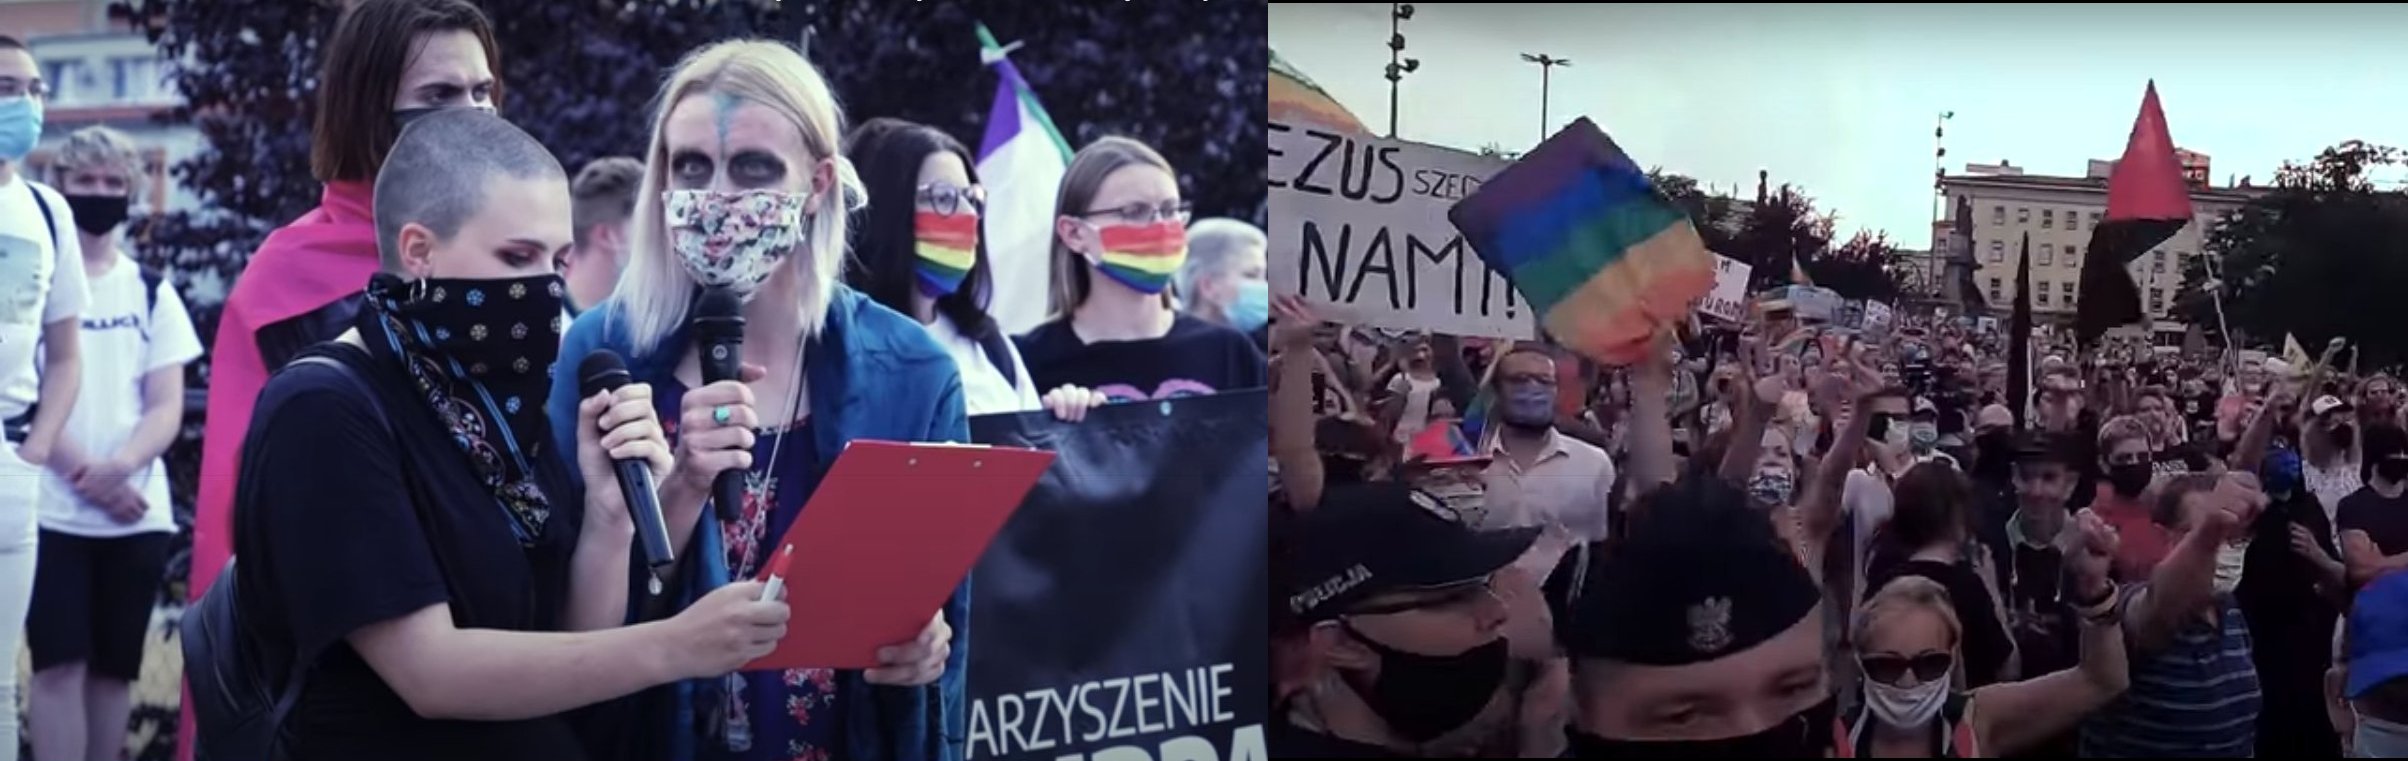 Absurdy na wiecu LGBT - Margot